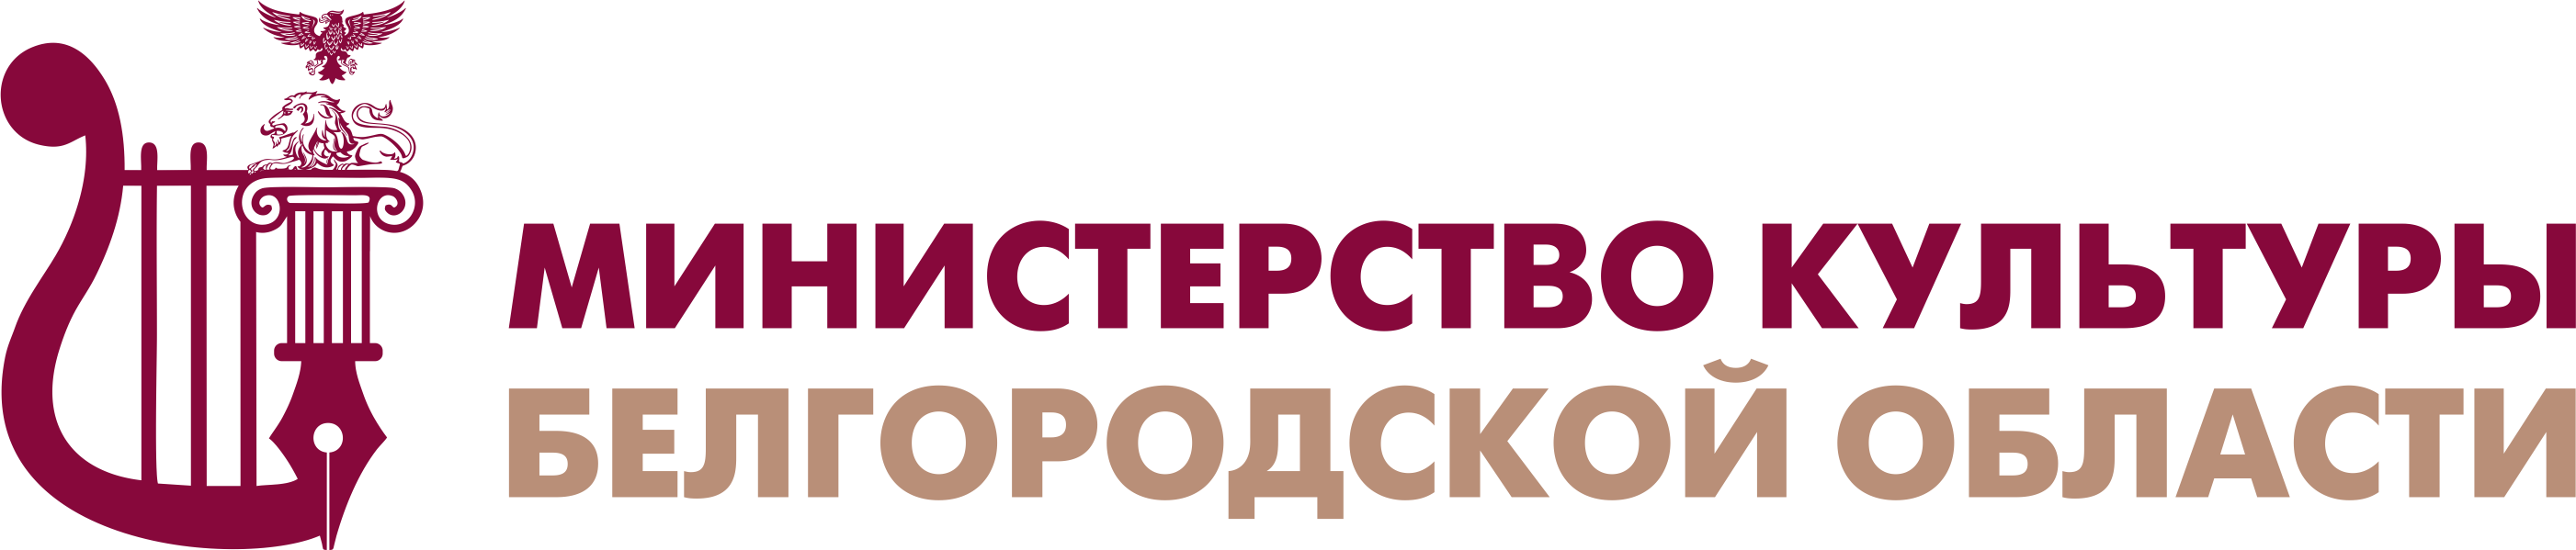 Официальный сайт управления культуры Белгородской области